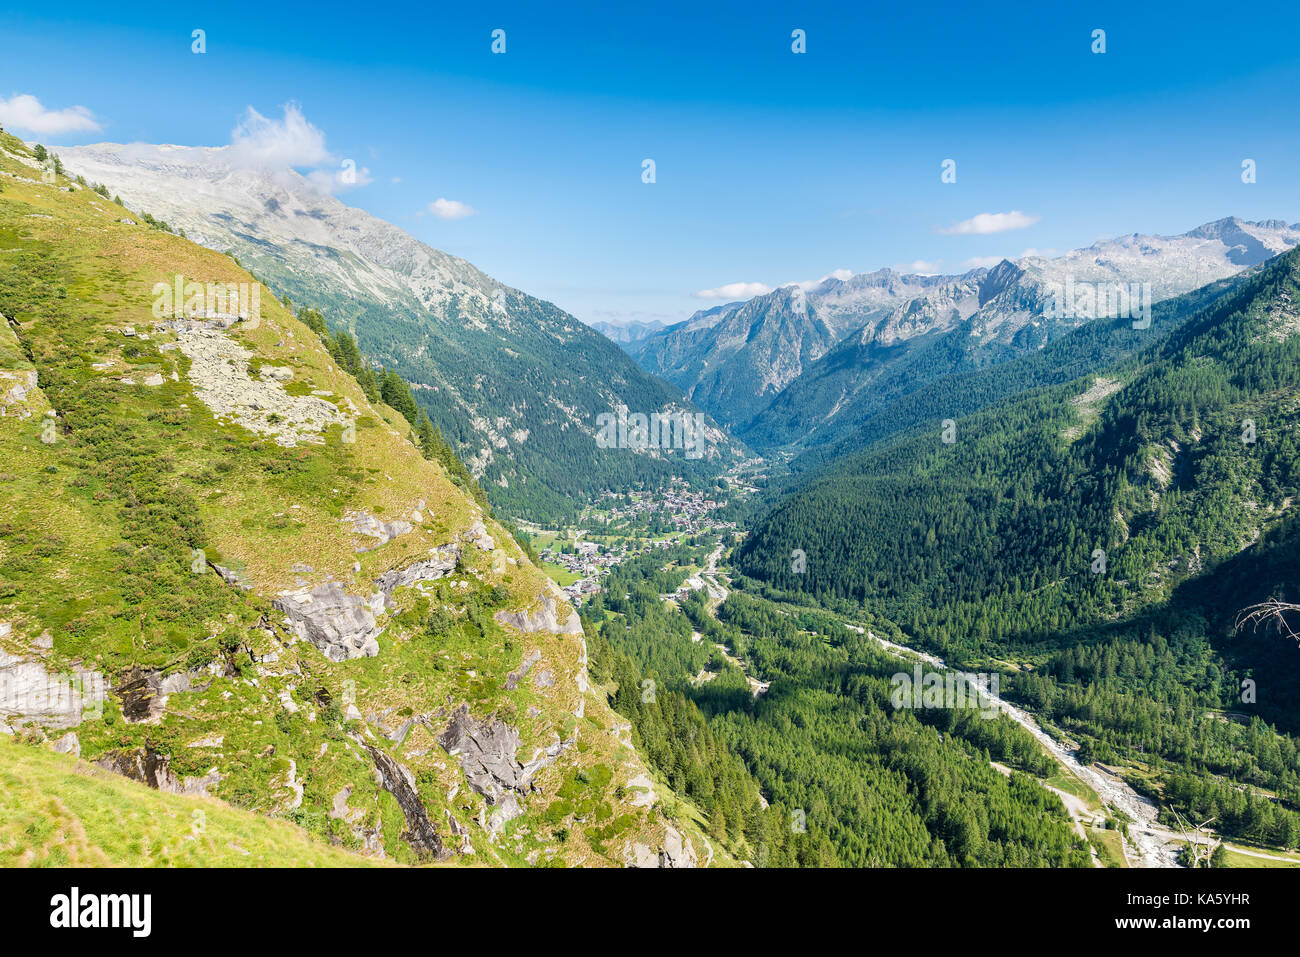 Luftaufnahme eines Alpine Valley, Beispiel des Urstromtals. Anzasca Valley, am Fuße des Monte Rosa, mit dem charakteristischen Dörfer von Macugnaga Stockfoto